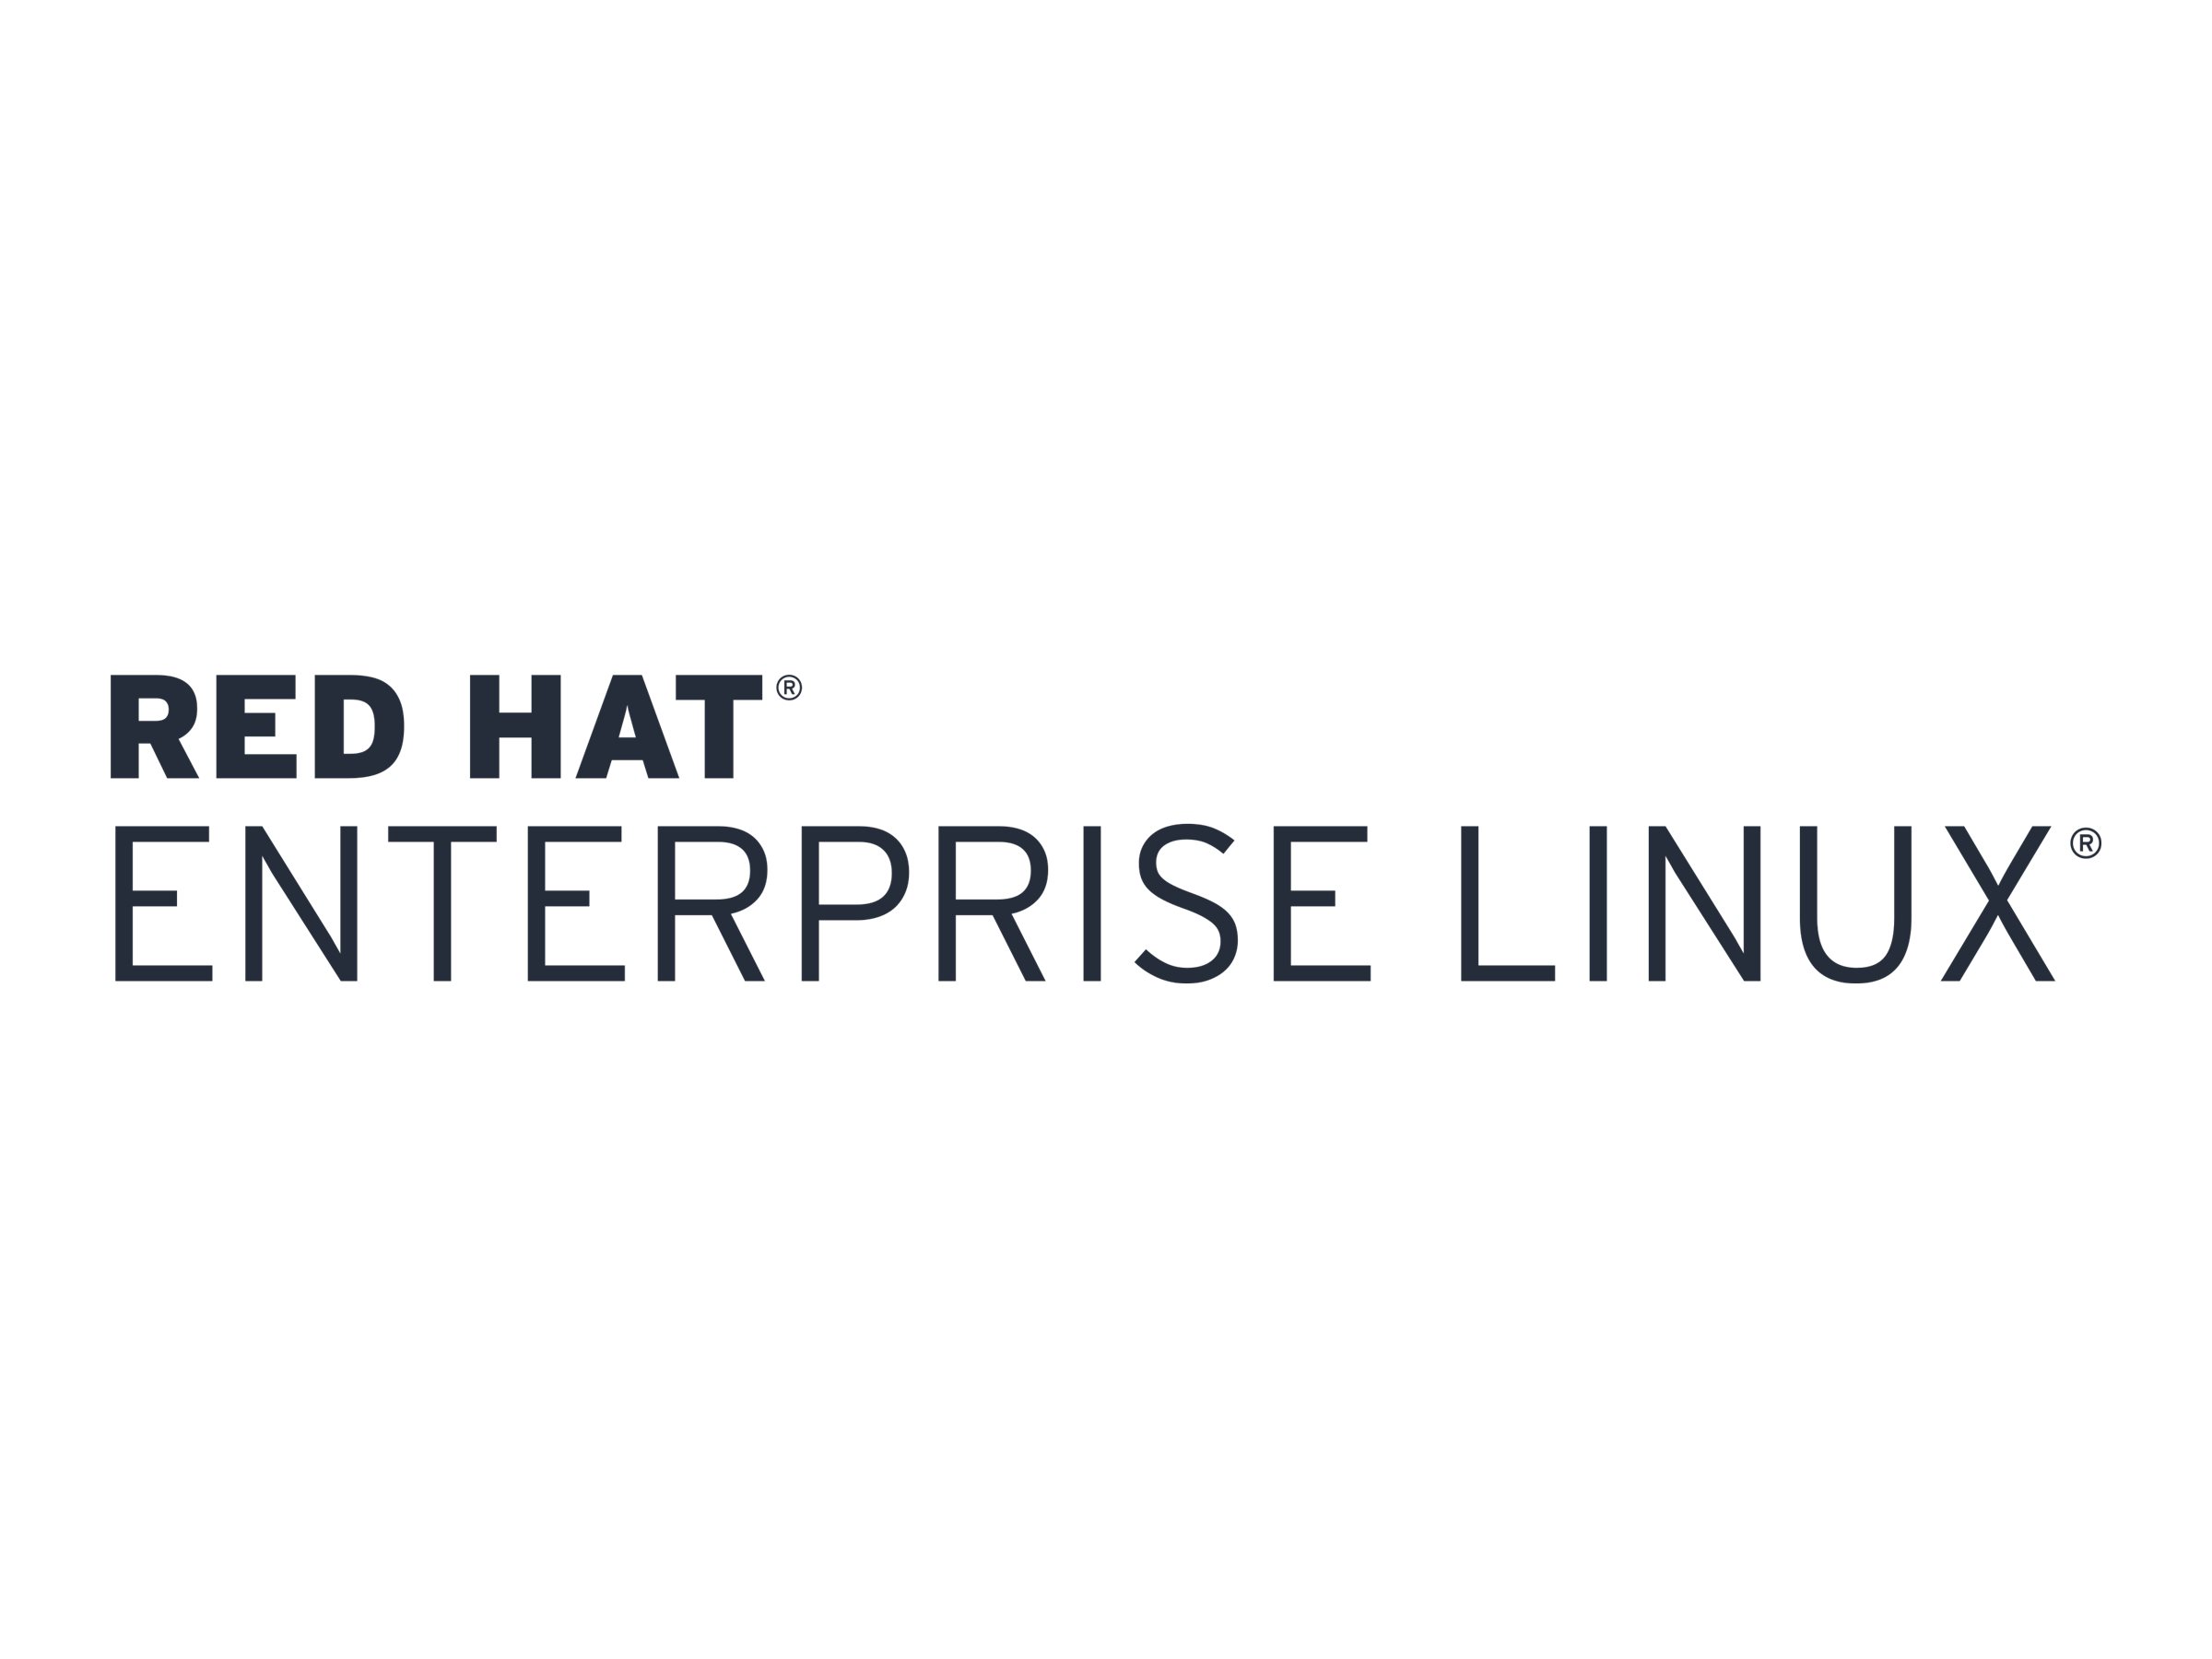 Red Hat Enterprise Linux Server - Standardabonnement (1 Jahr) + 1 Jahr Support, 24x7 - 2 Anschlüsse, 1 Gast - elektronisch